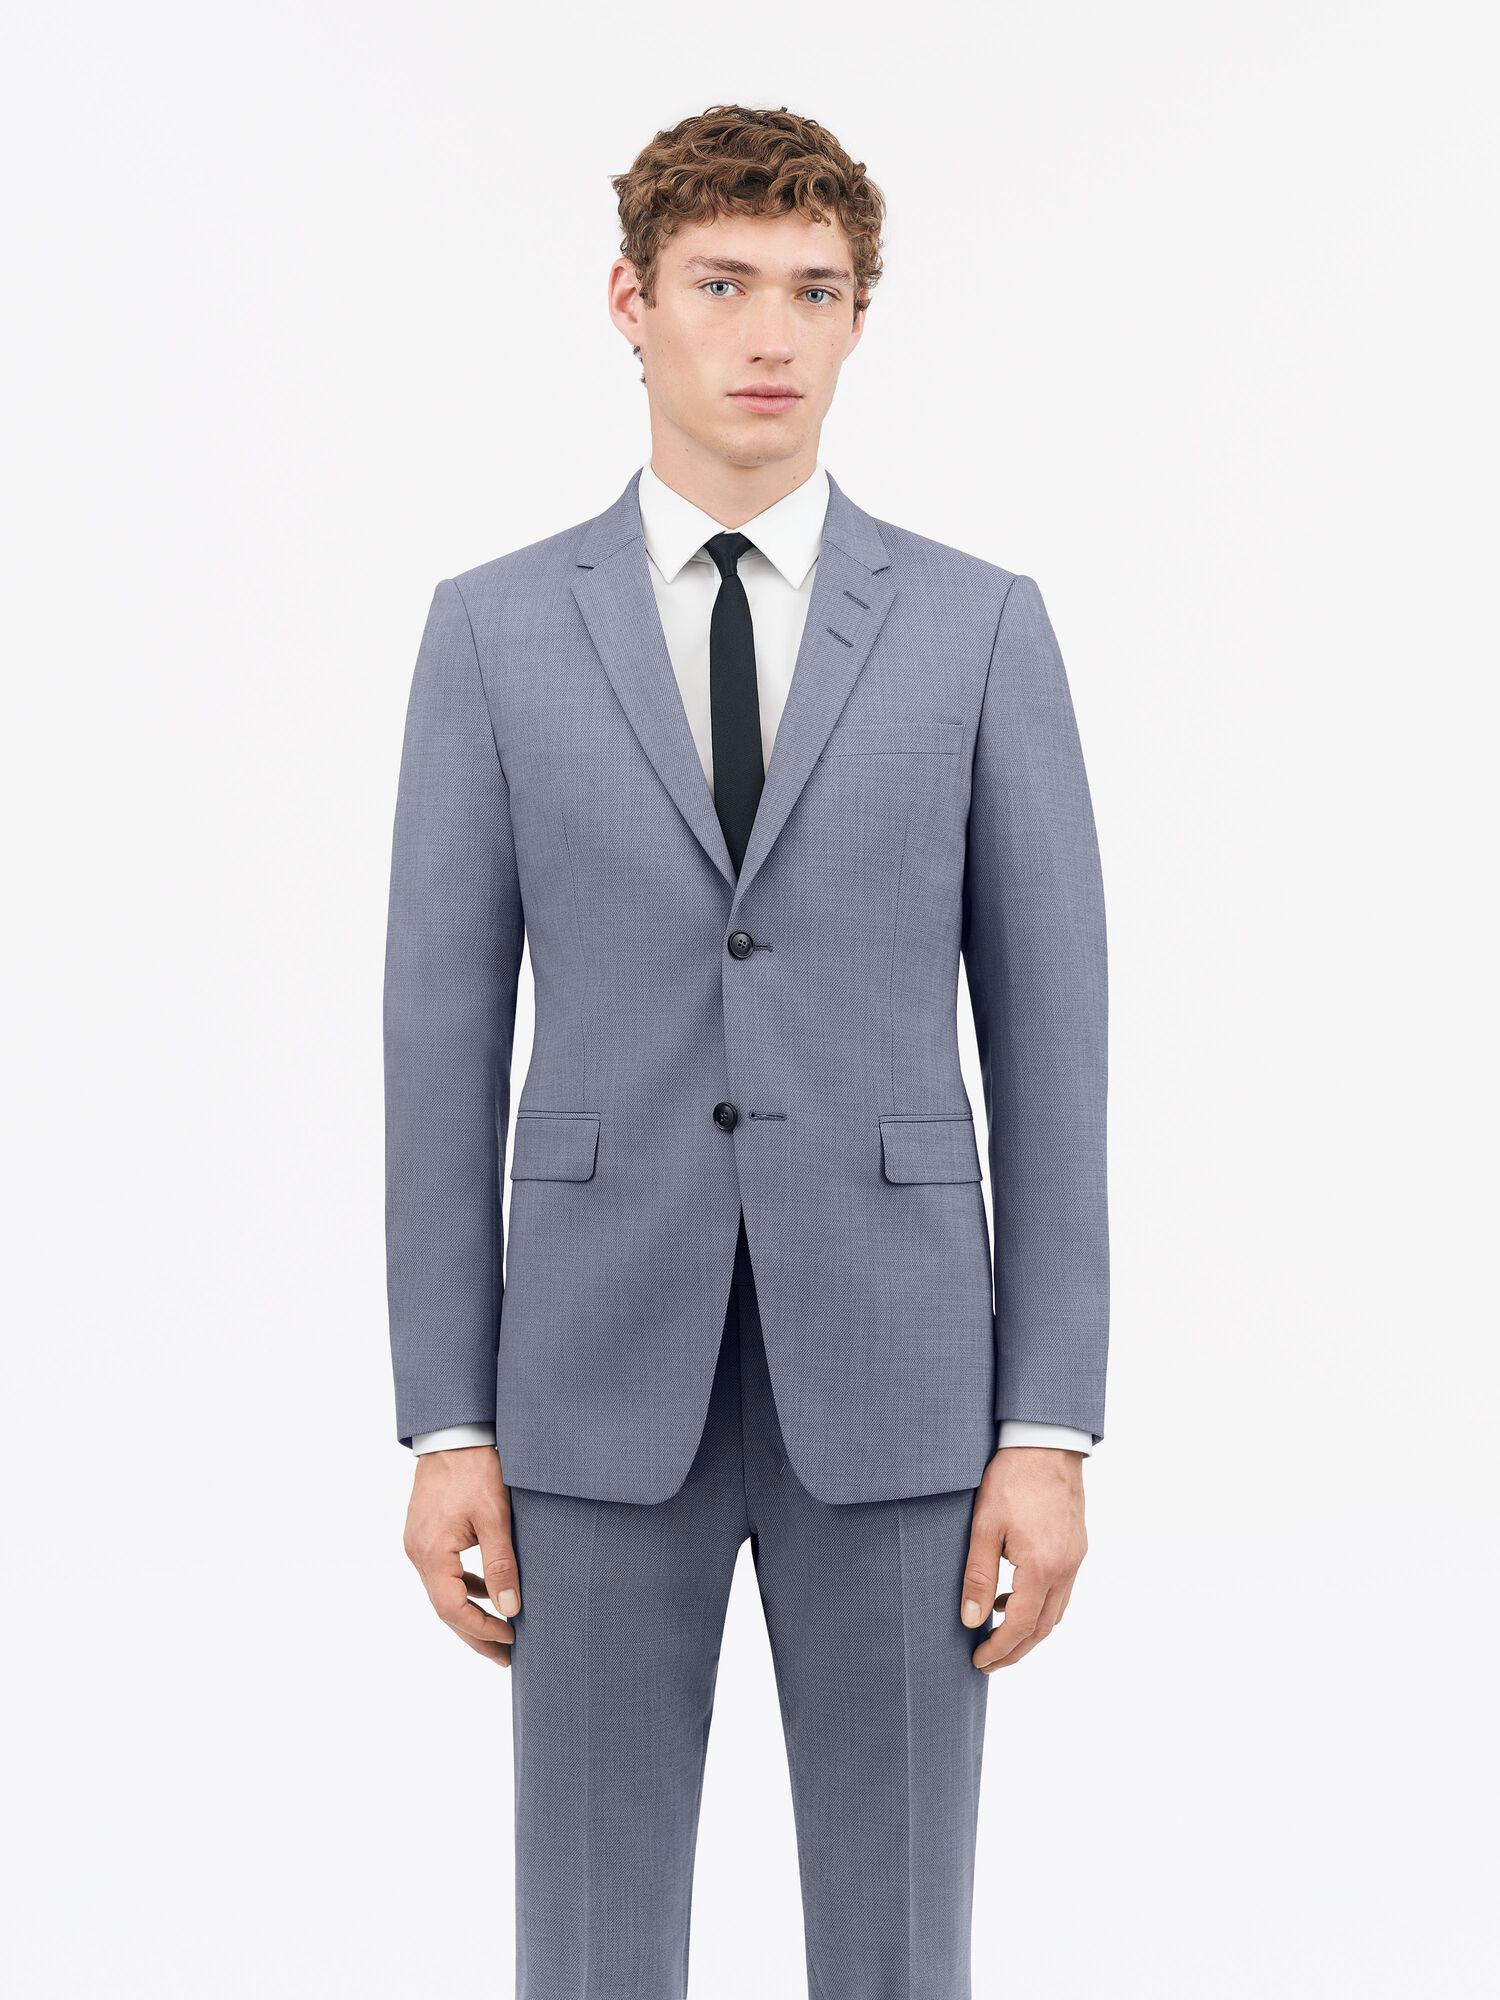 Jerrett Suit